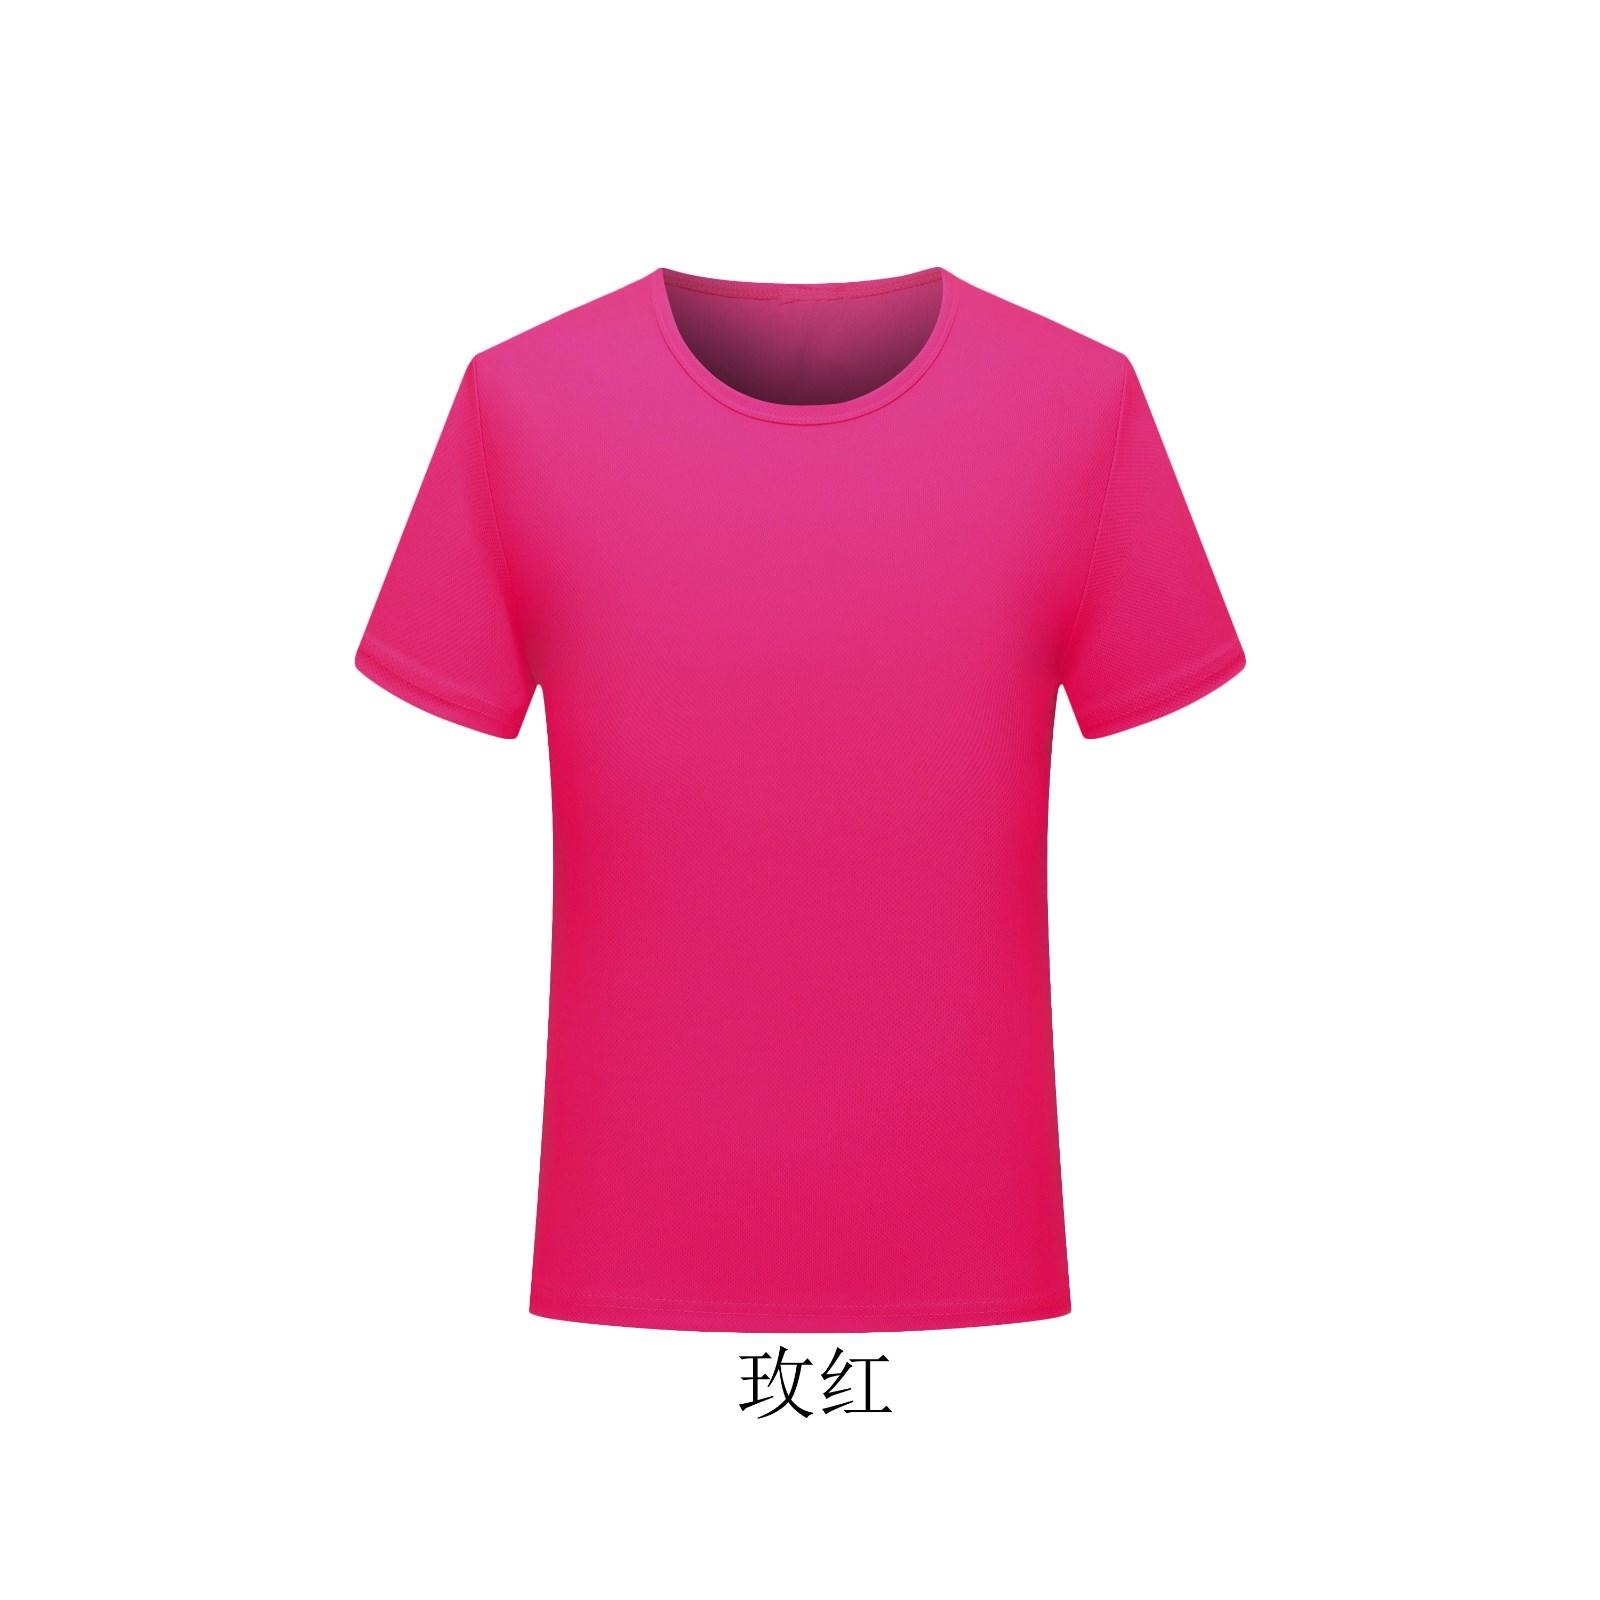 地摊货源纯色速干圆领T恤健身瑜伽马拉松跑步定制短袖T恤 户外运动衣印logo图片